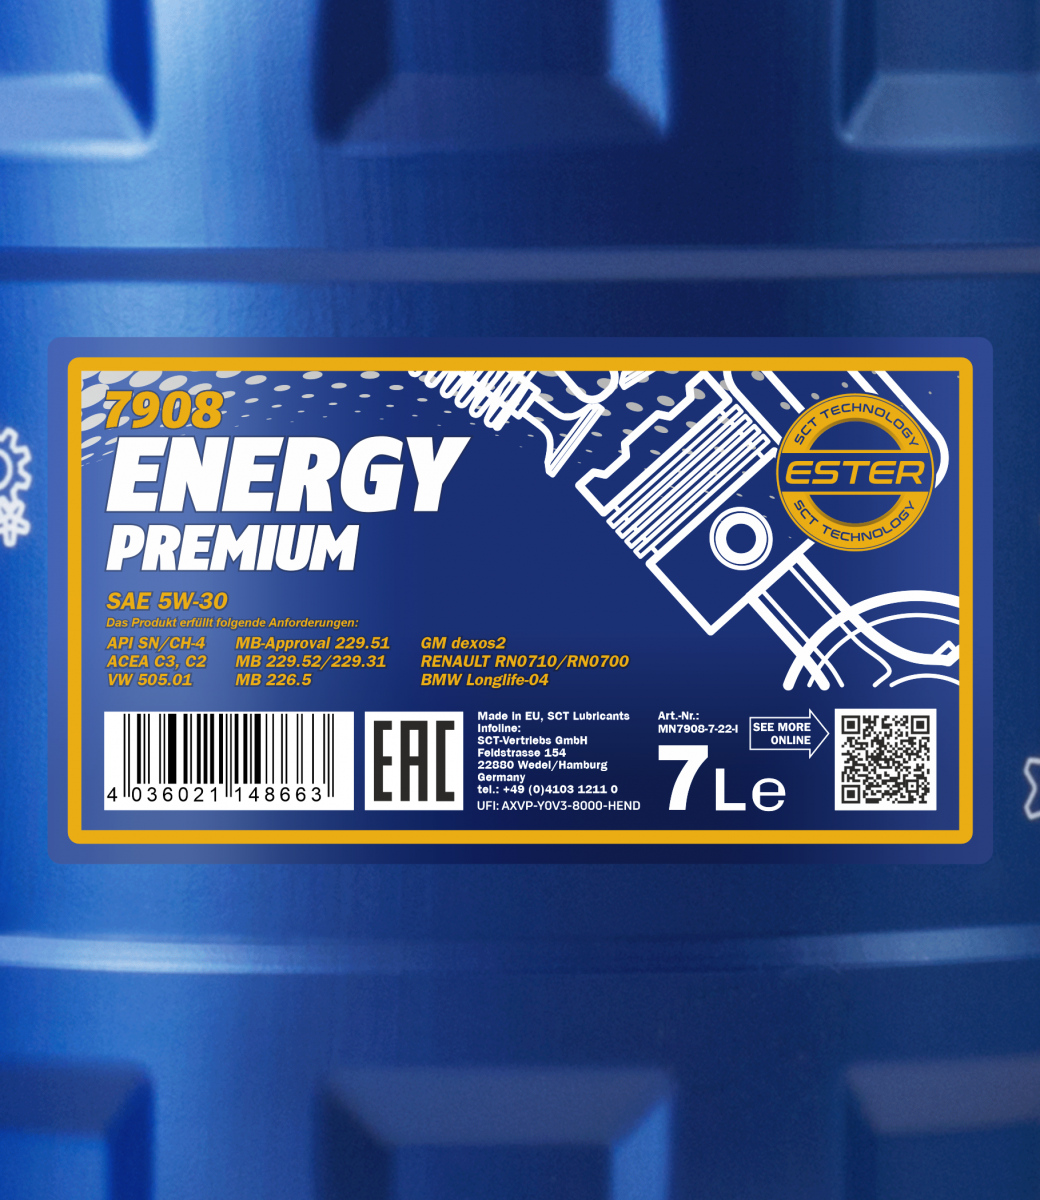 Mannol Energy Premium 5W-30 (5 l) Erfahrungen 4.2/5 Sternen